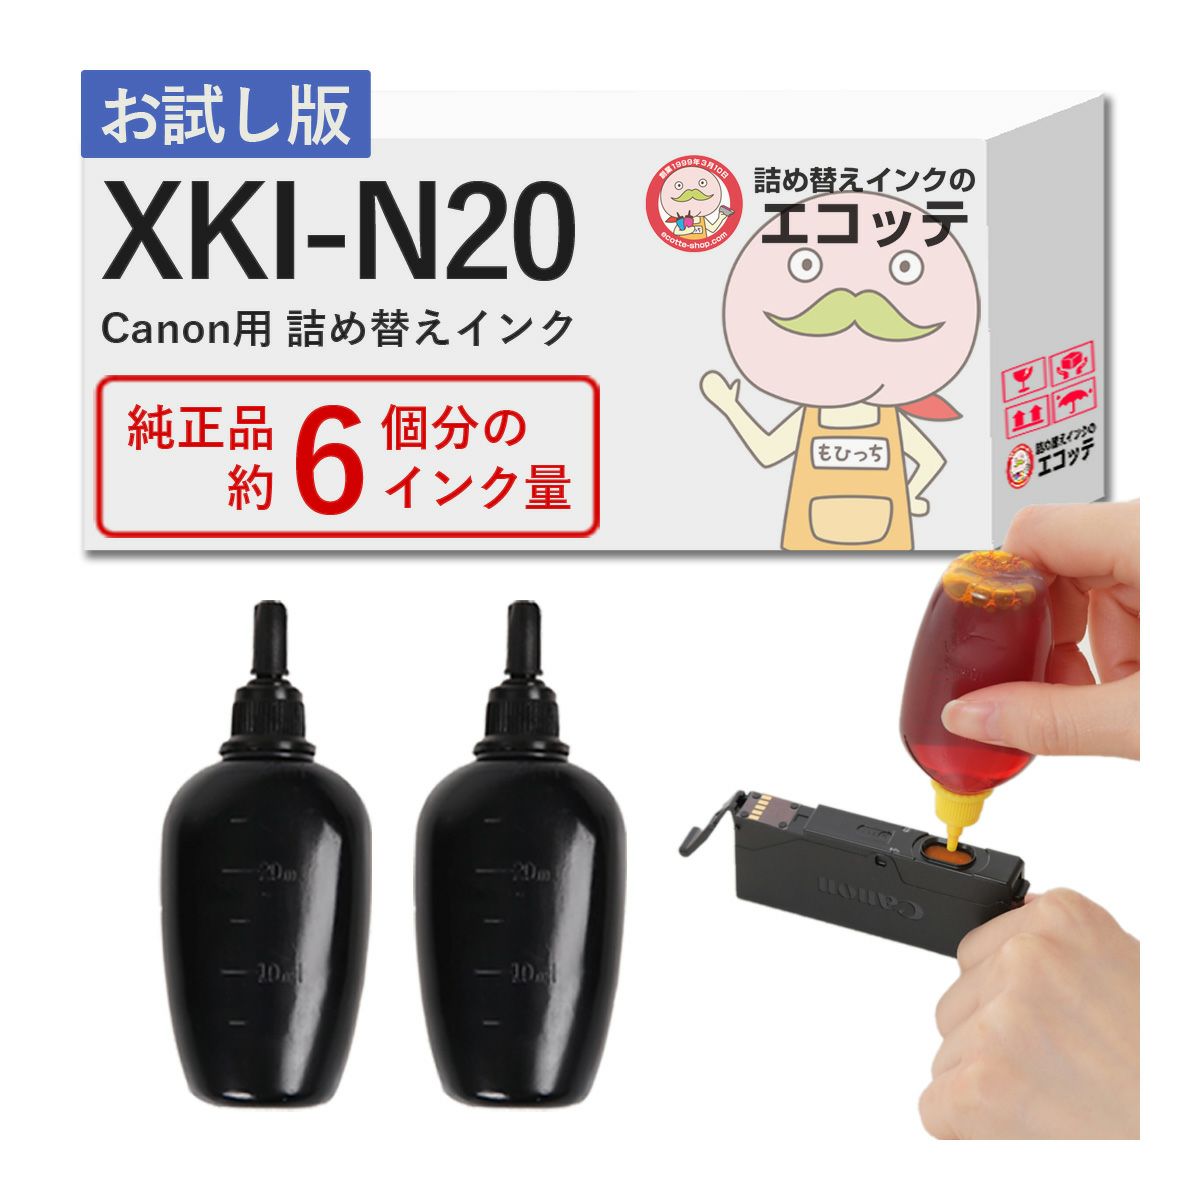 キャノン TX100用 詰め替え インク 250ml x1本 安心の日本製